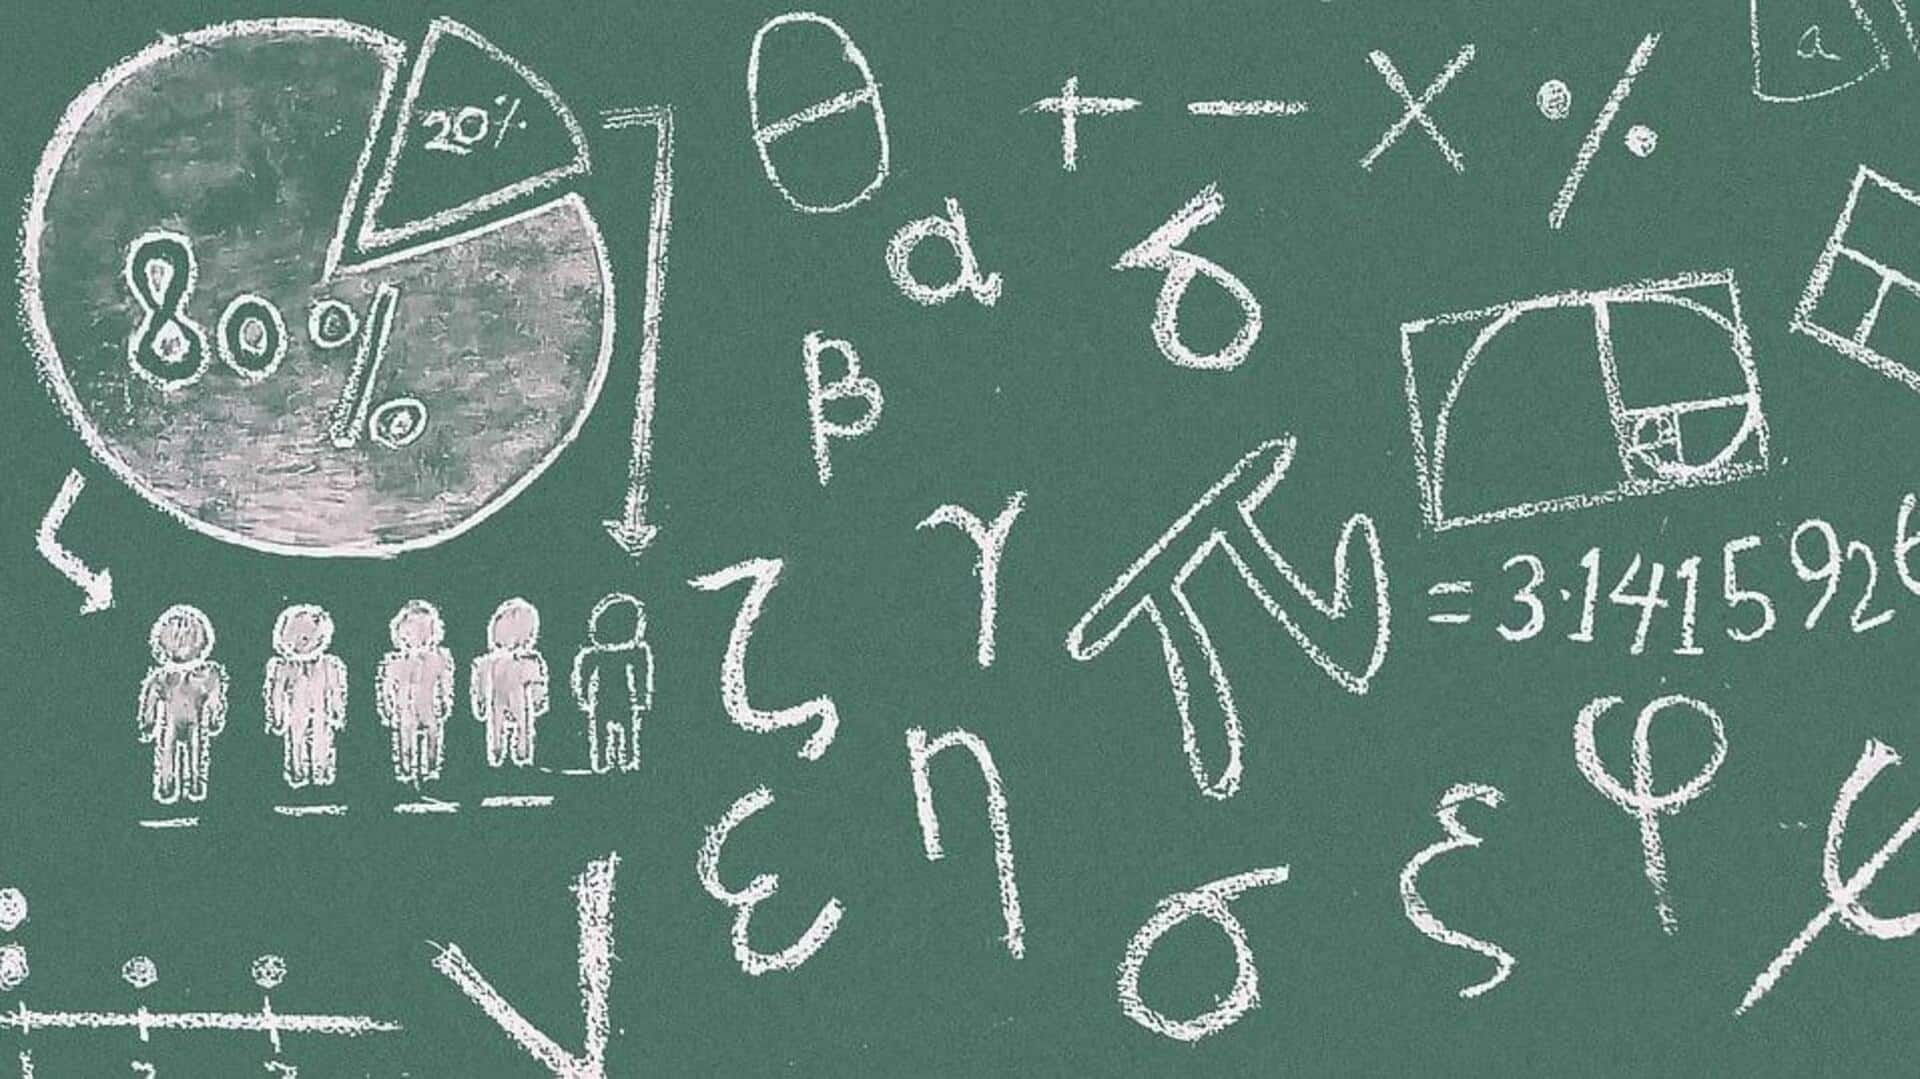 उत्तर प्रदेश बोर्ड परीक्षा: 12वीं के छात्र इस तरह करें गणित की तैयारी, मिलेंगे बेहतर अंक